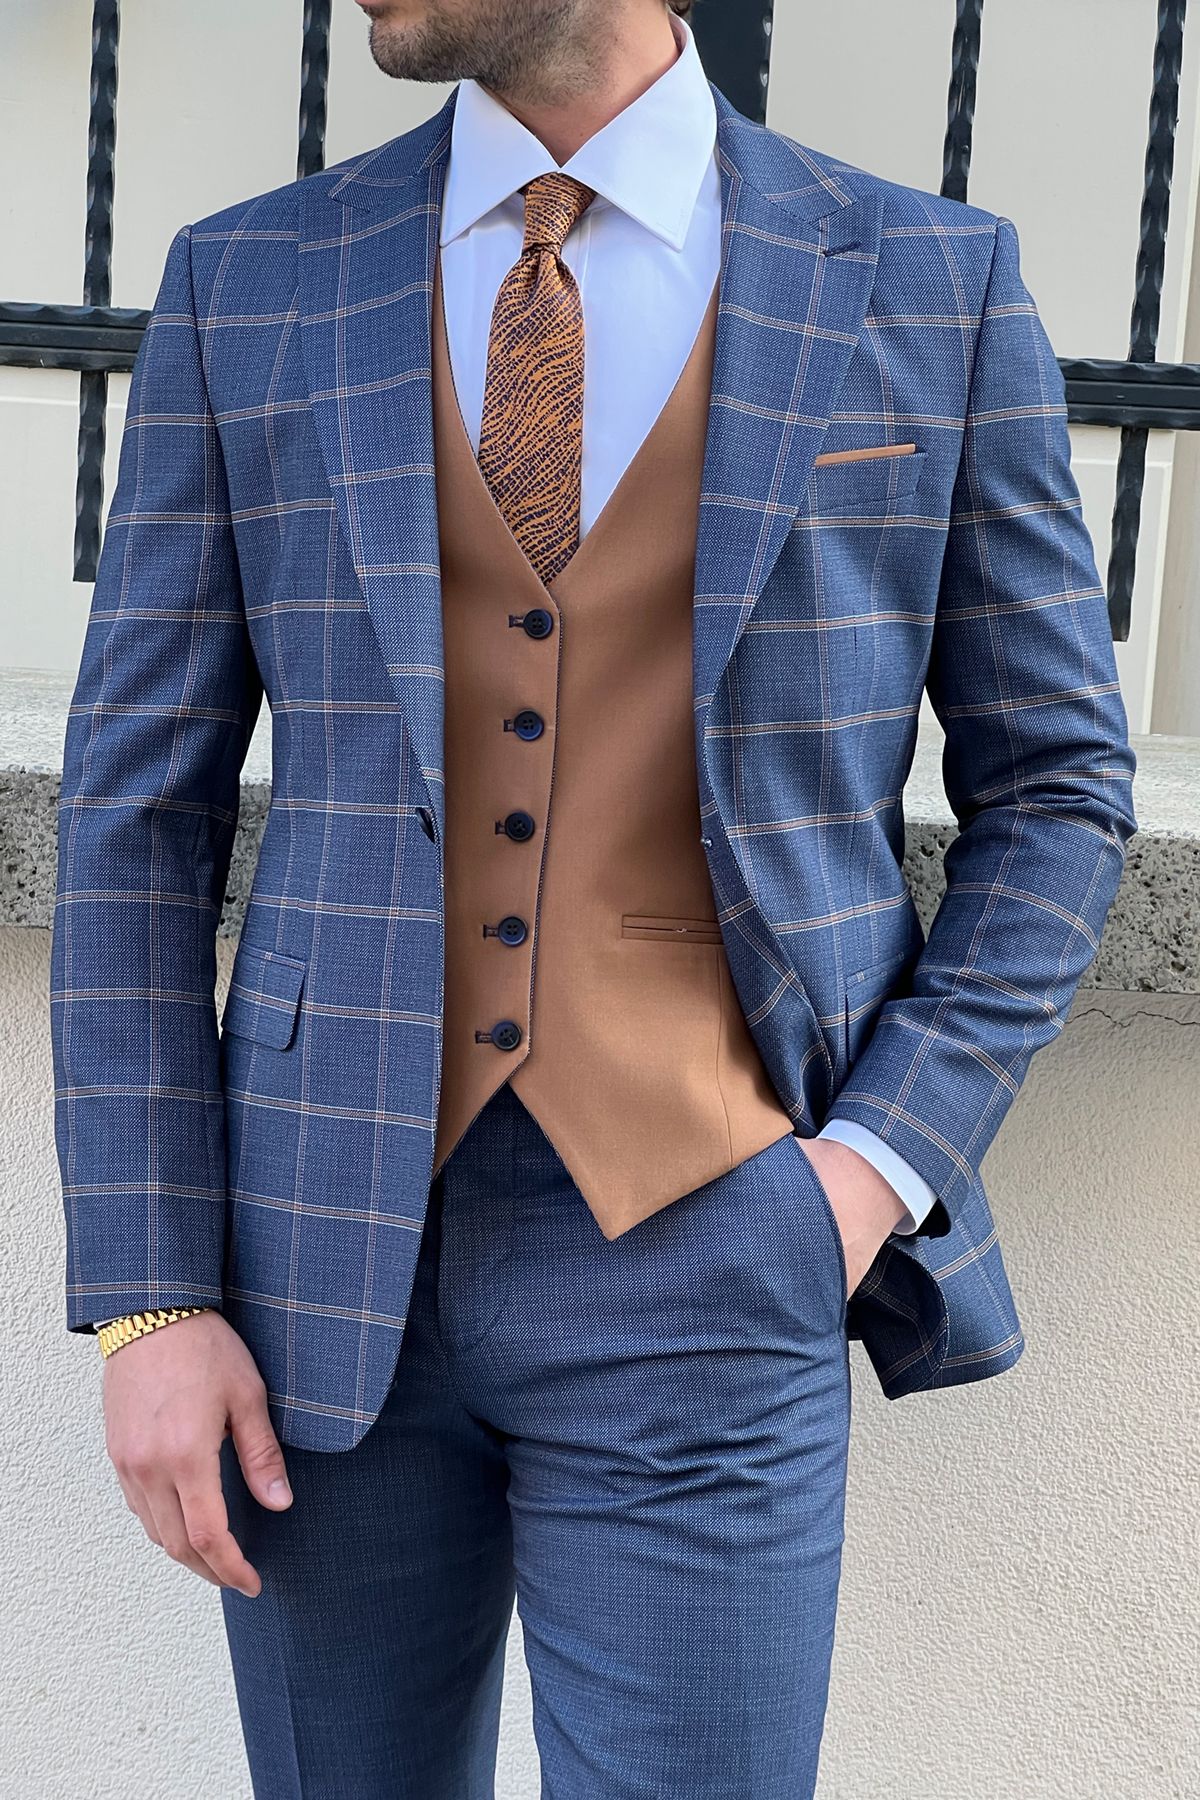 Daniel Navy Blue and Camel Suit